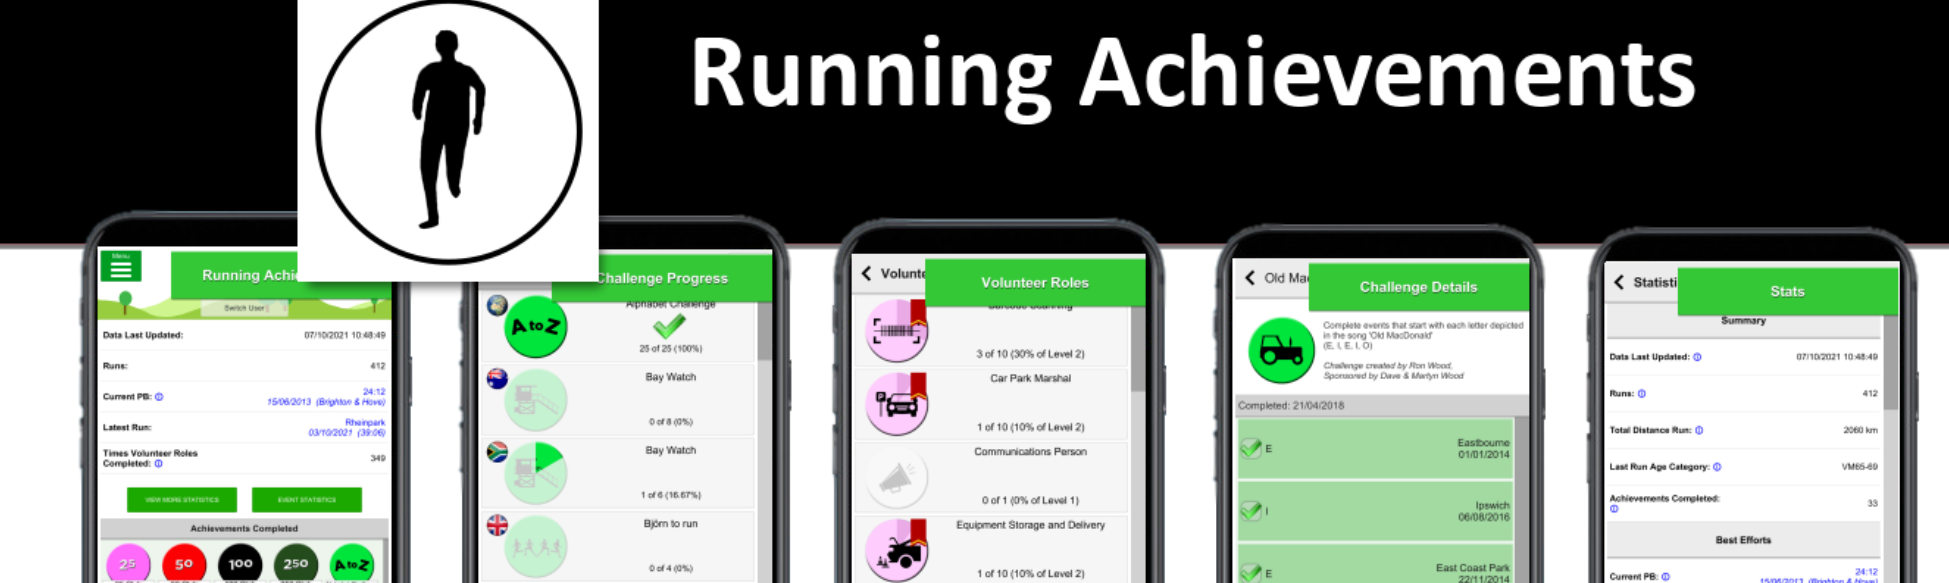 Running Achievements Version 1.7.10 Released